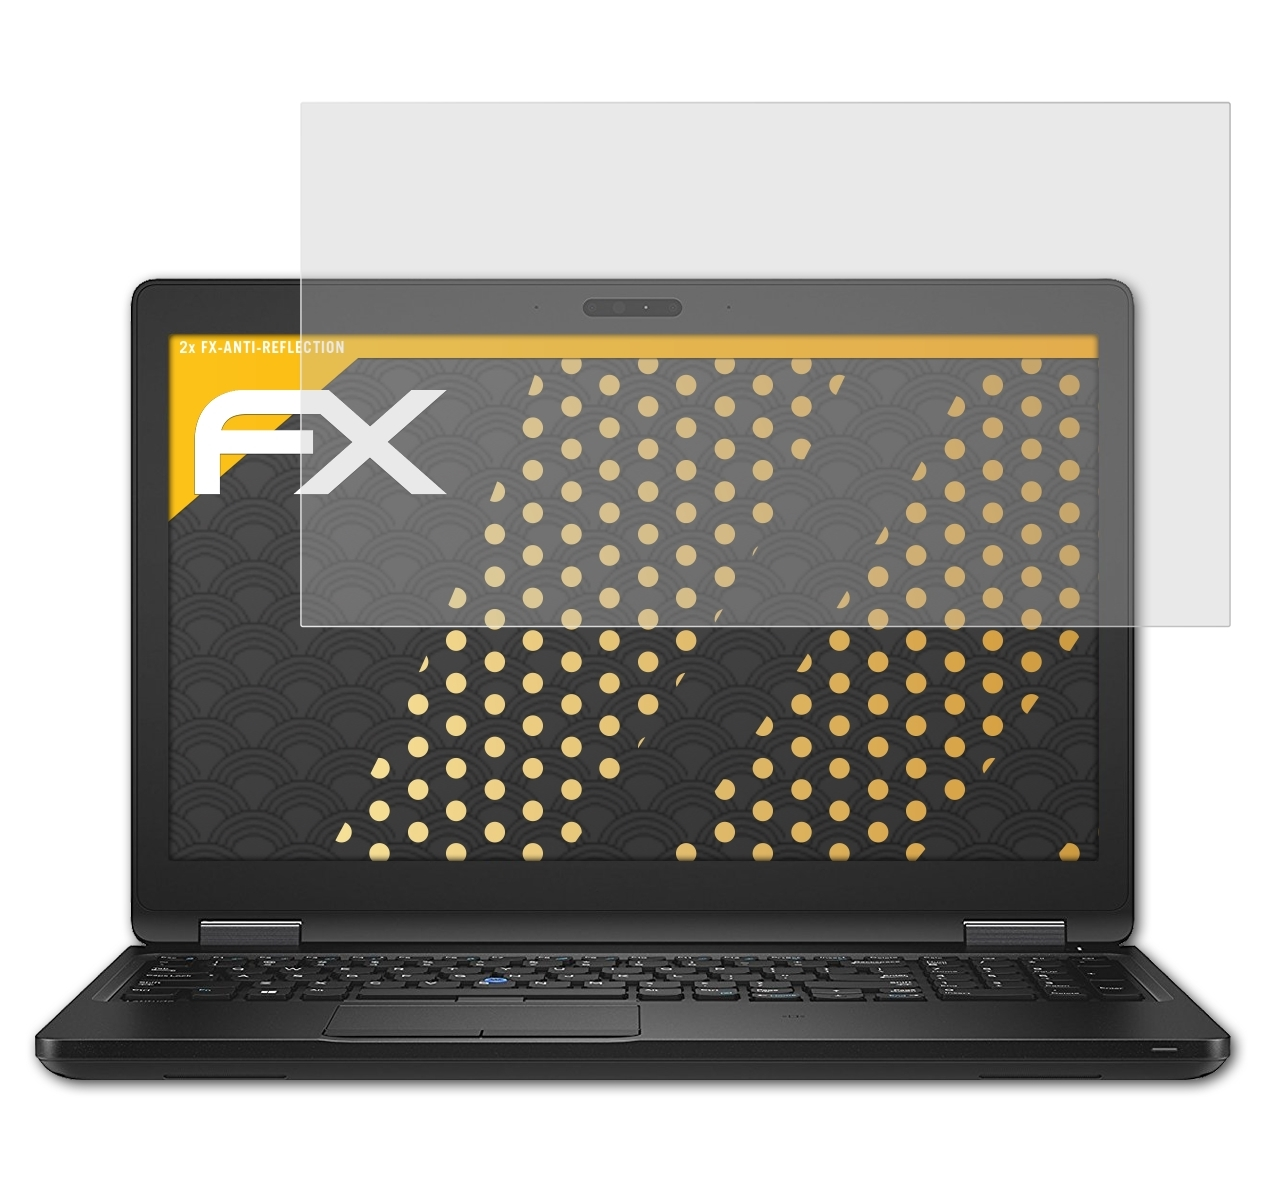 Dell FX-Antireflex 5580) Displayschutz(für 2x ATFOLIX Latitude